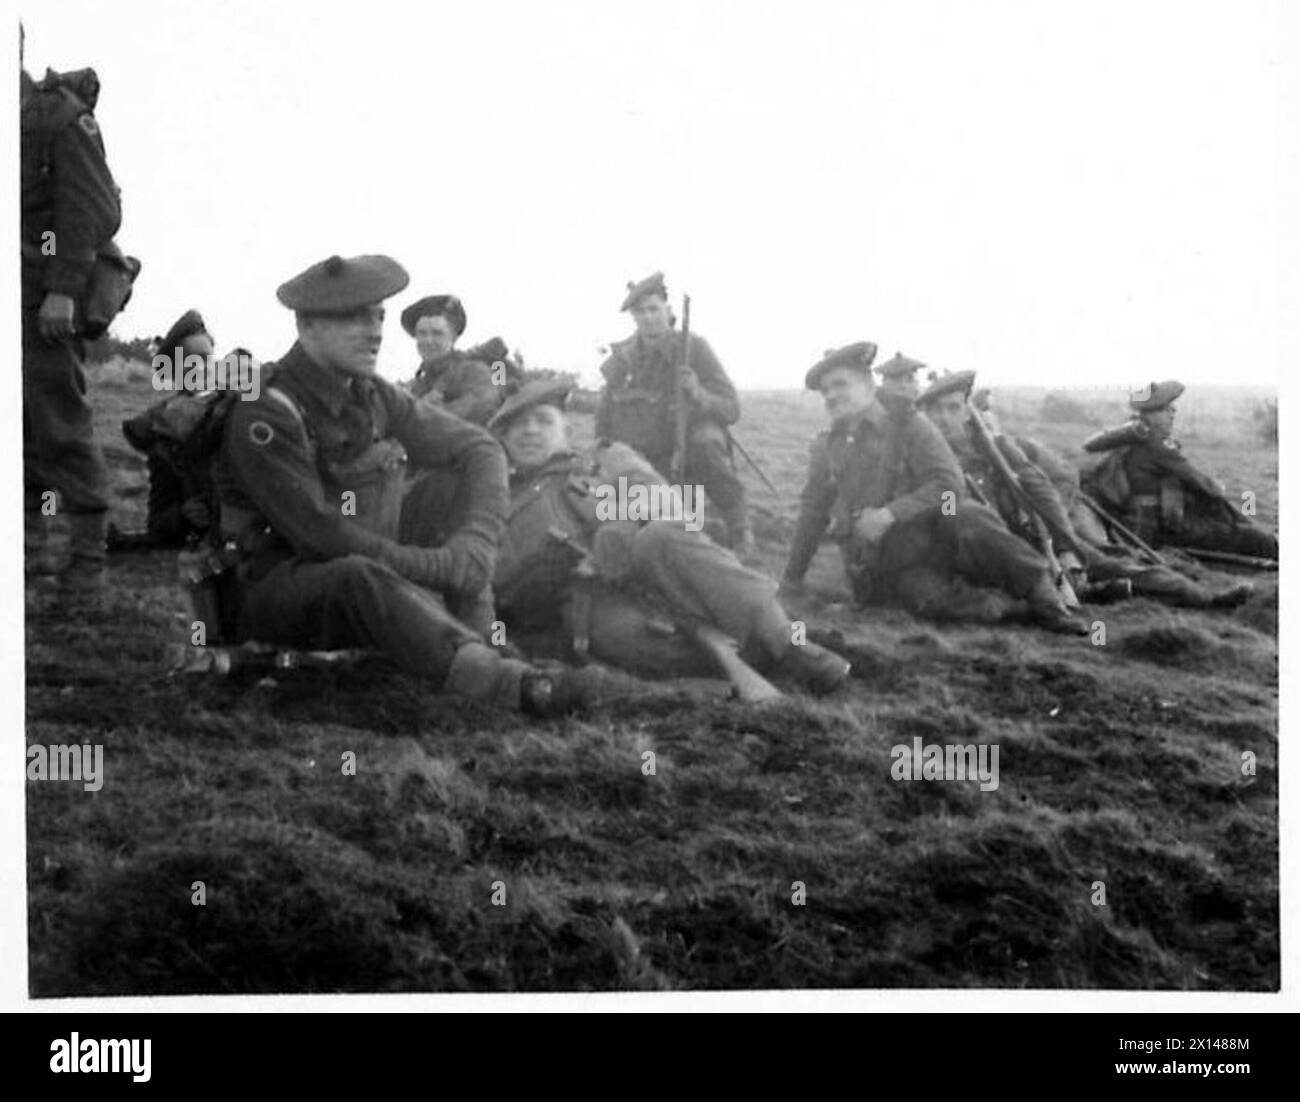 RADUNARE LE TRUPPE PARACADUTISTI - uomini dei Royal Scots Fusiliers che riposano sulle South Downs durante l'esercitazione a Chanctonbury Hill, Sussex, nell'area del 4th Corps British Army Foto Stock